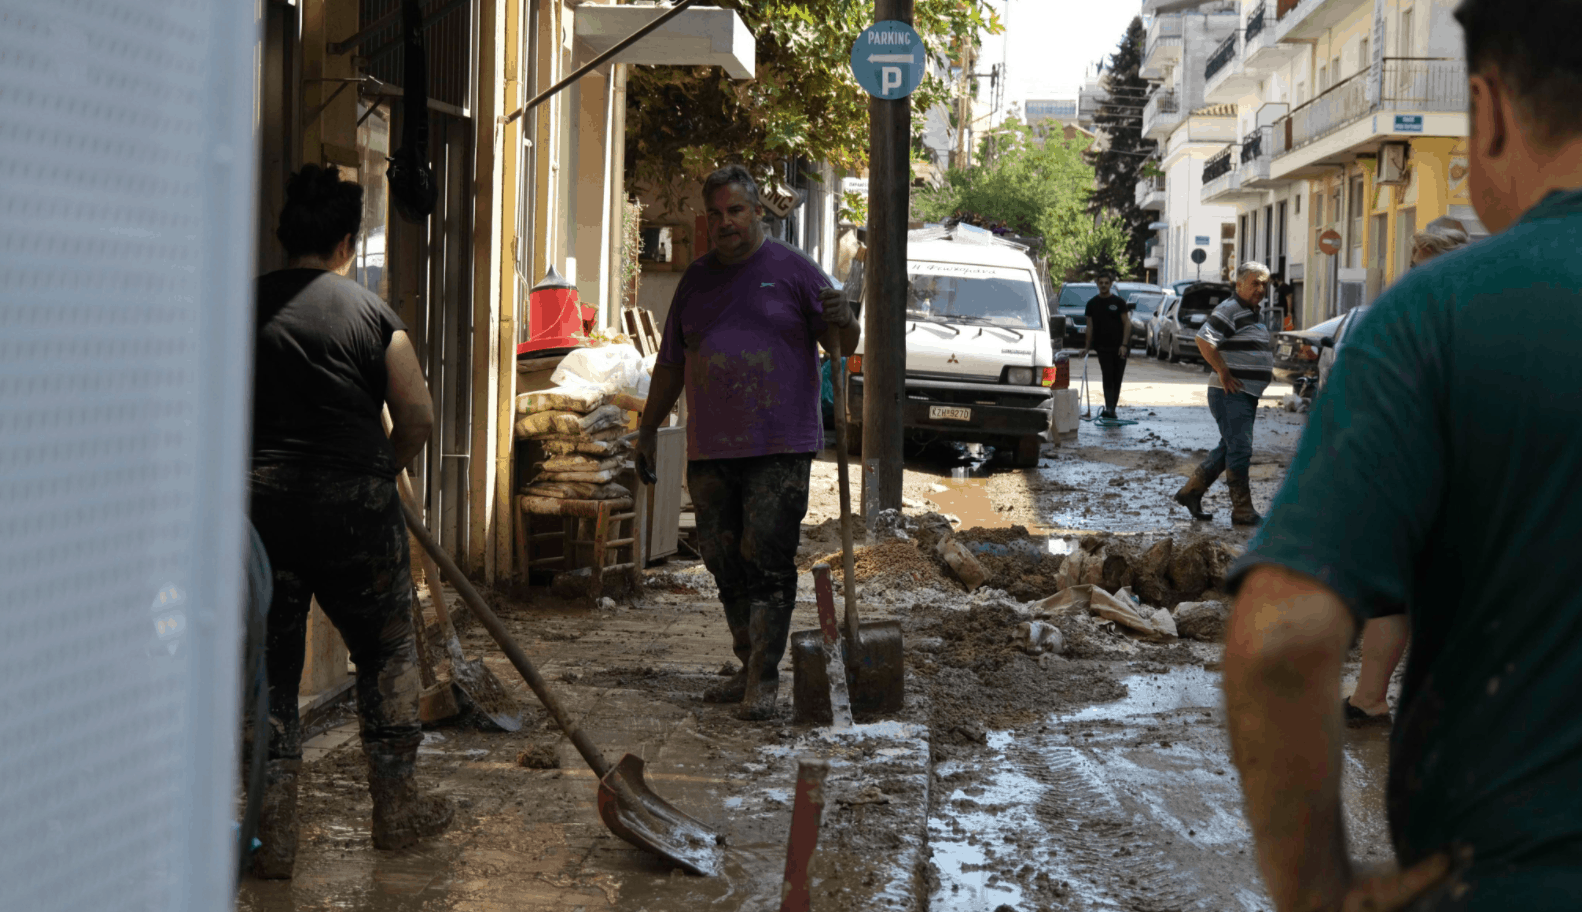 Cyclone Ianos repairs underway in Karditsa